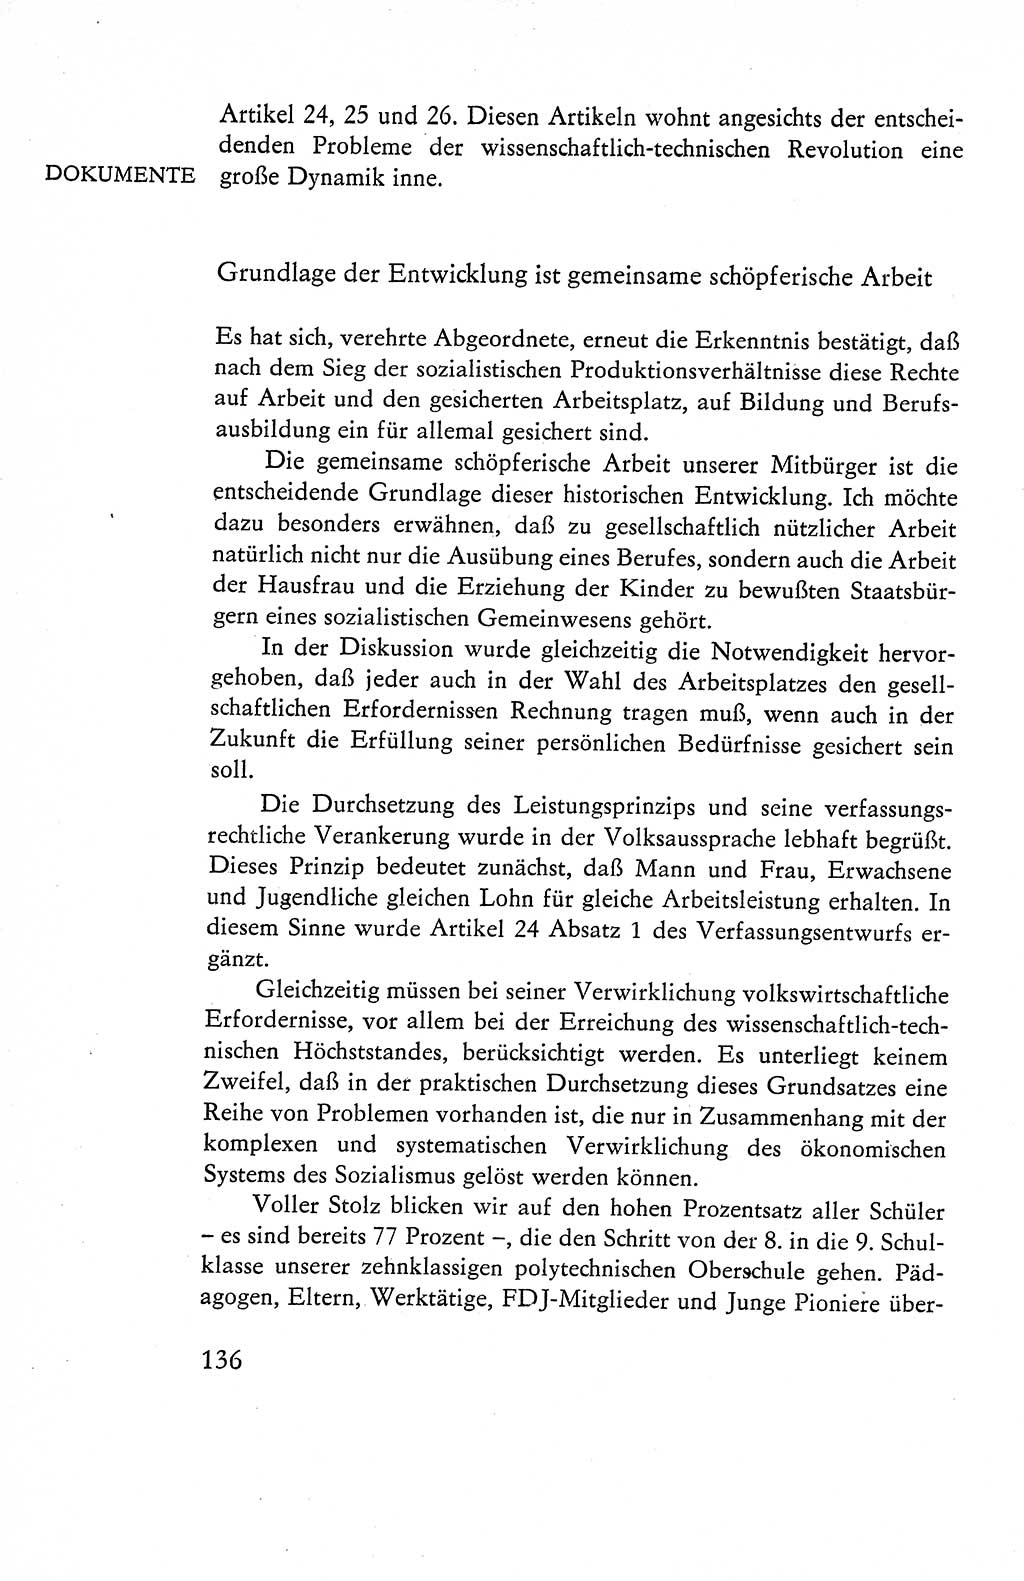 Verfassung der Deutschen Demokratischen Republik (DDR), Dokumente, Kommentar 1969, Band 1, Seite 136 (Verf. DDR Dok. Komm. 1969, Bd. 1, S. 136)